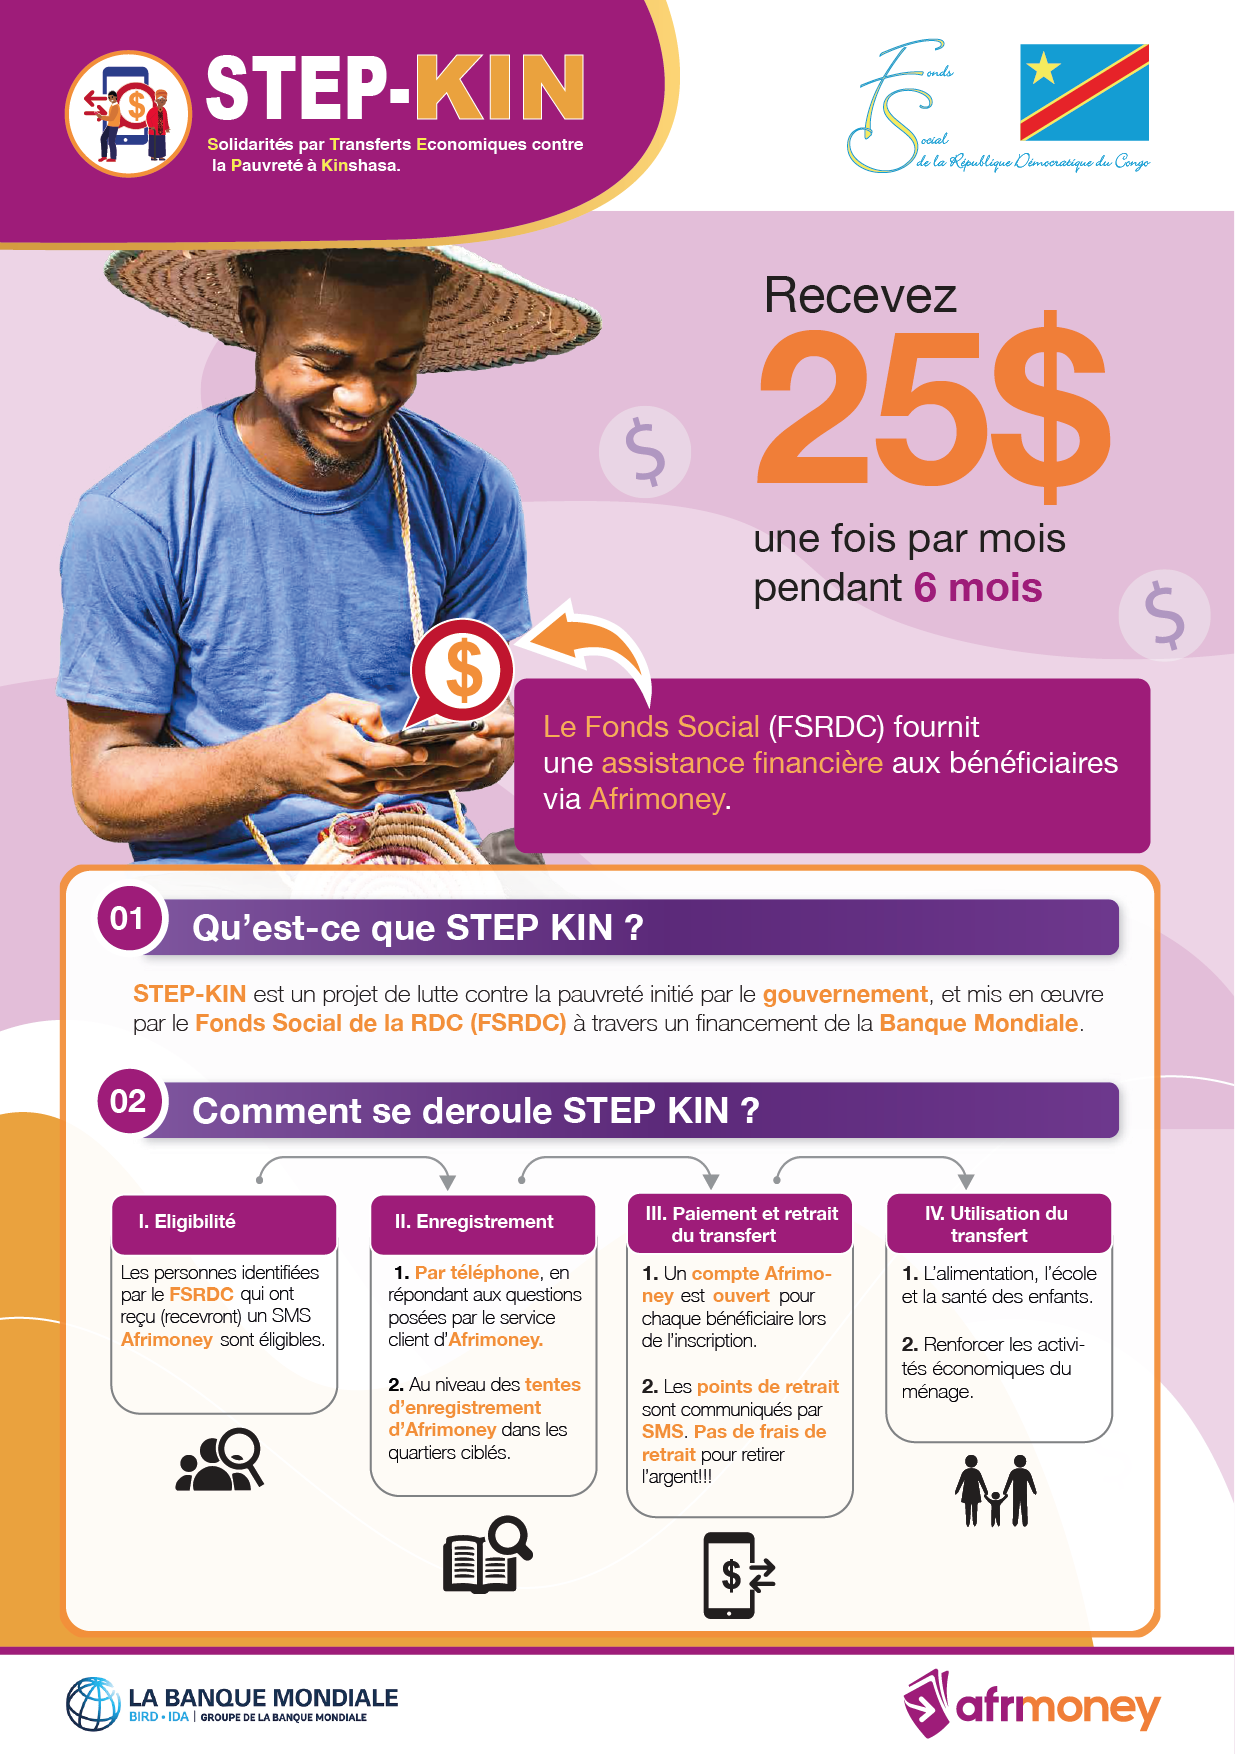 Le Fs Social (FSRDC) fournit une assistance financière aux bénéficiaires via Afrimoney